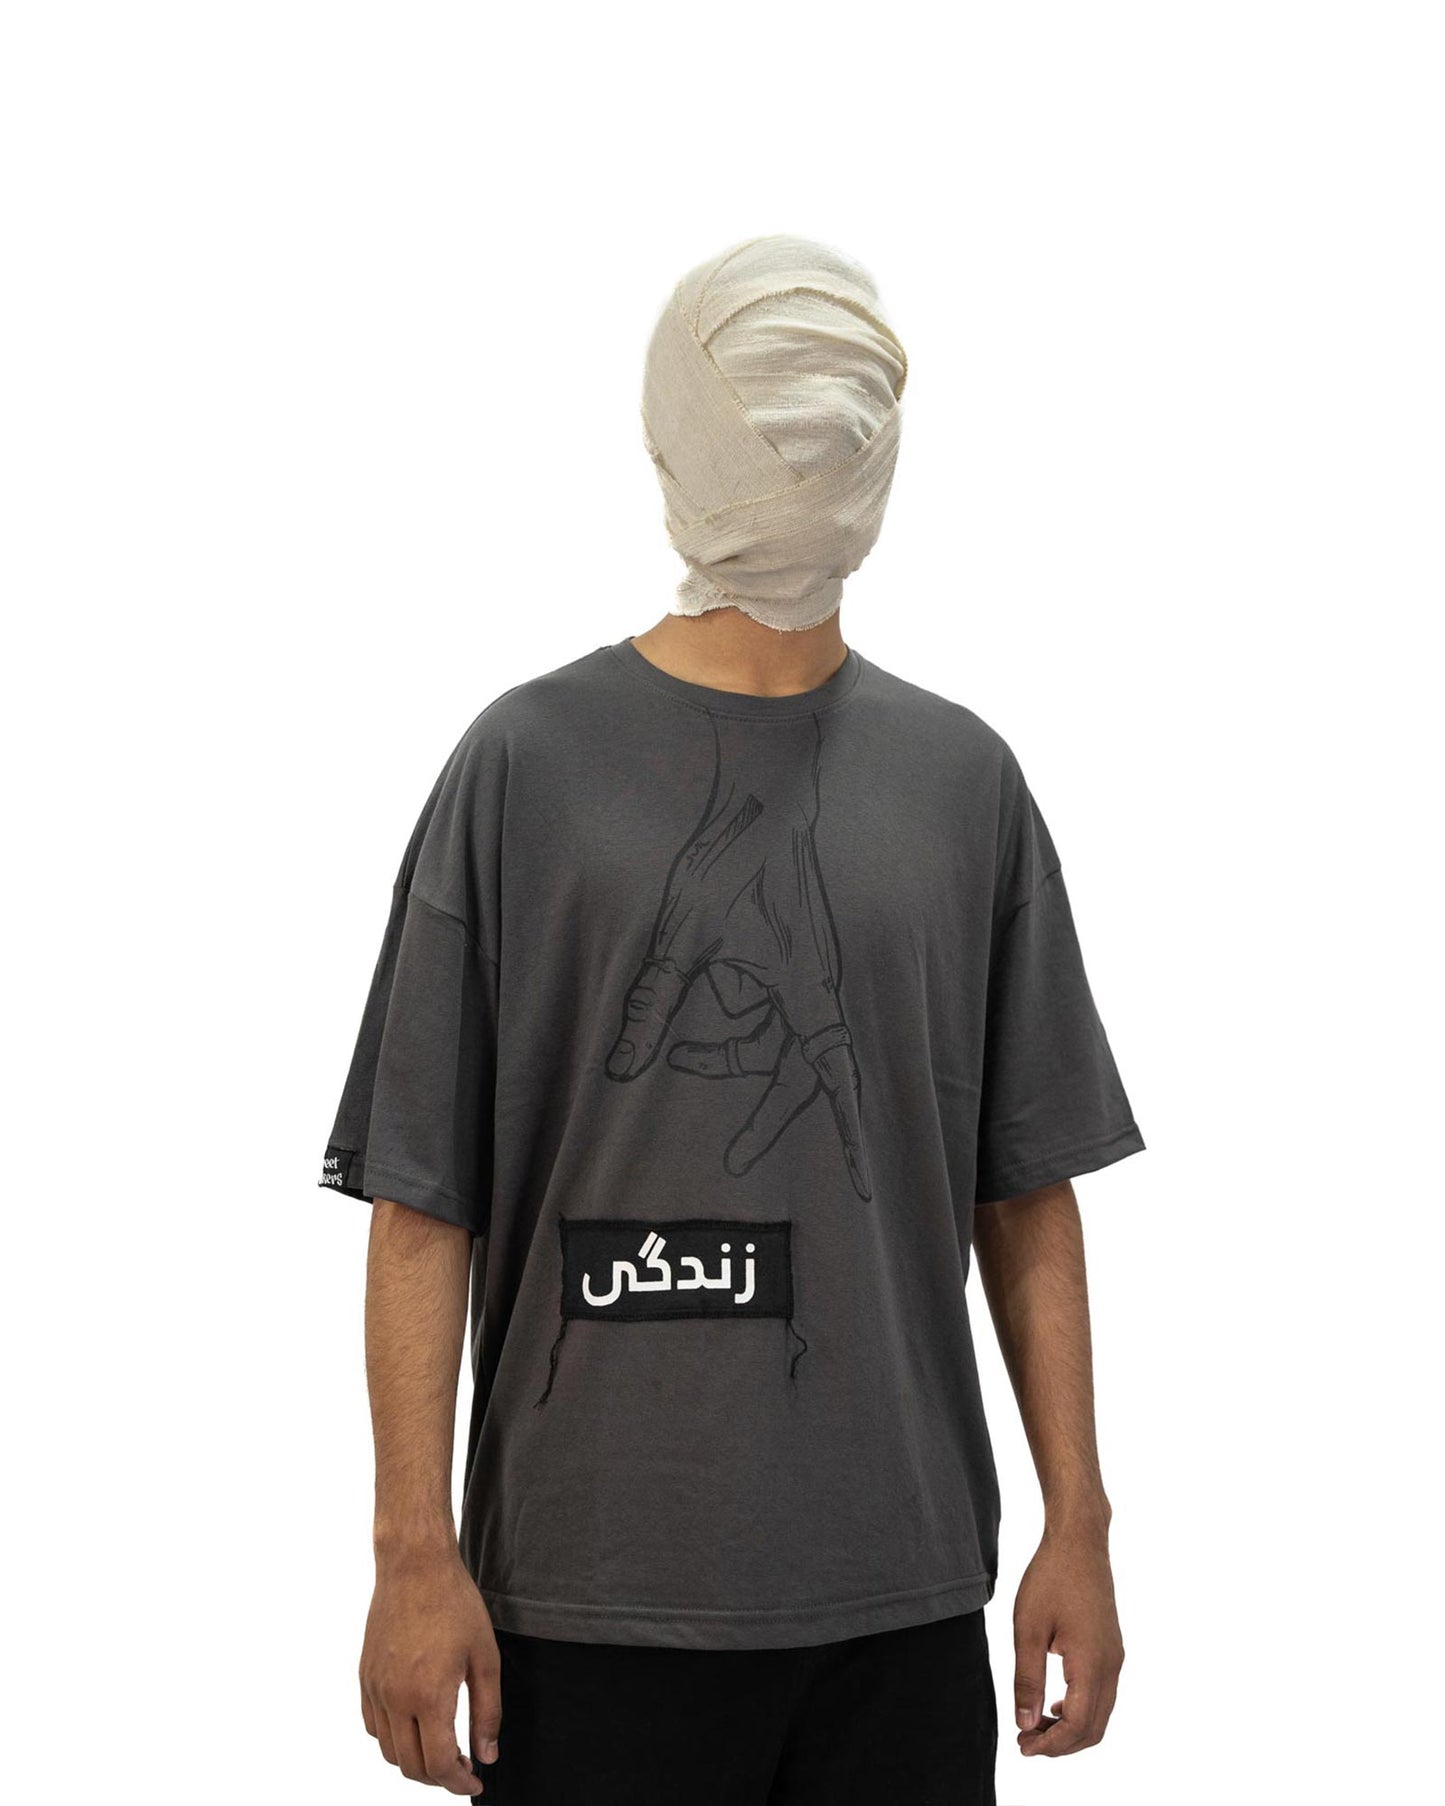 Zindagi - Oversized Graphic T-shirt